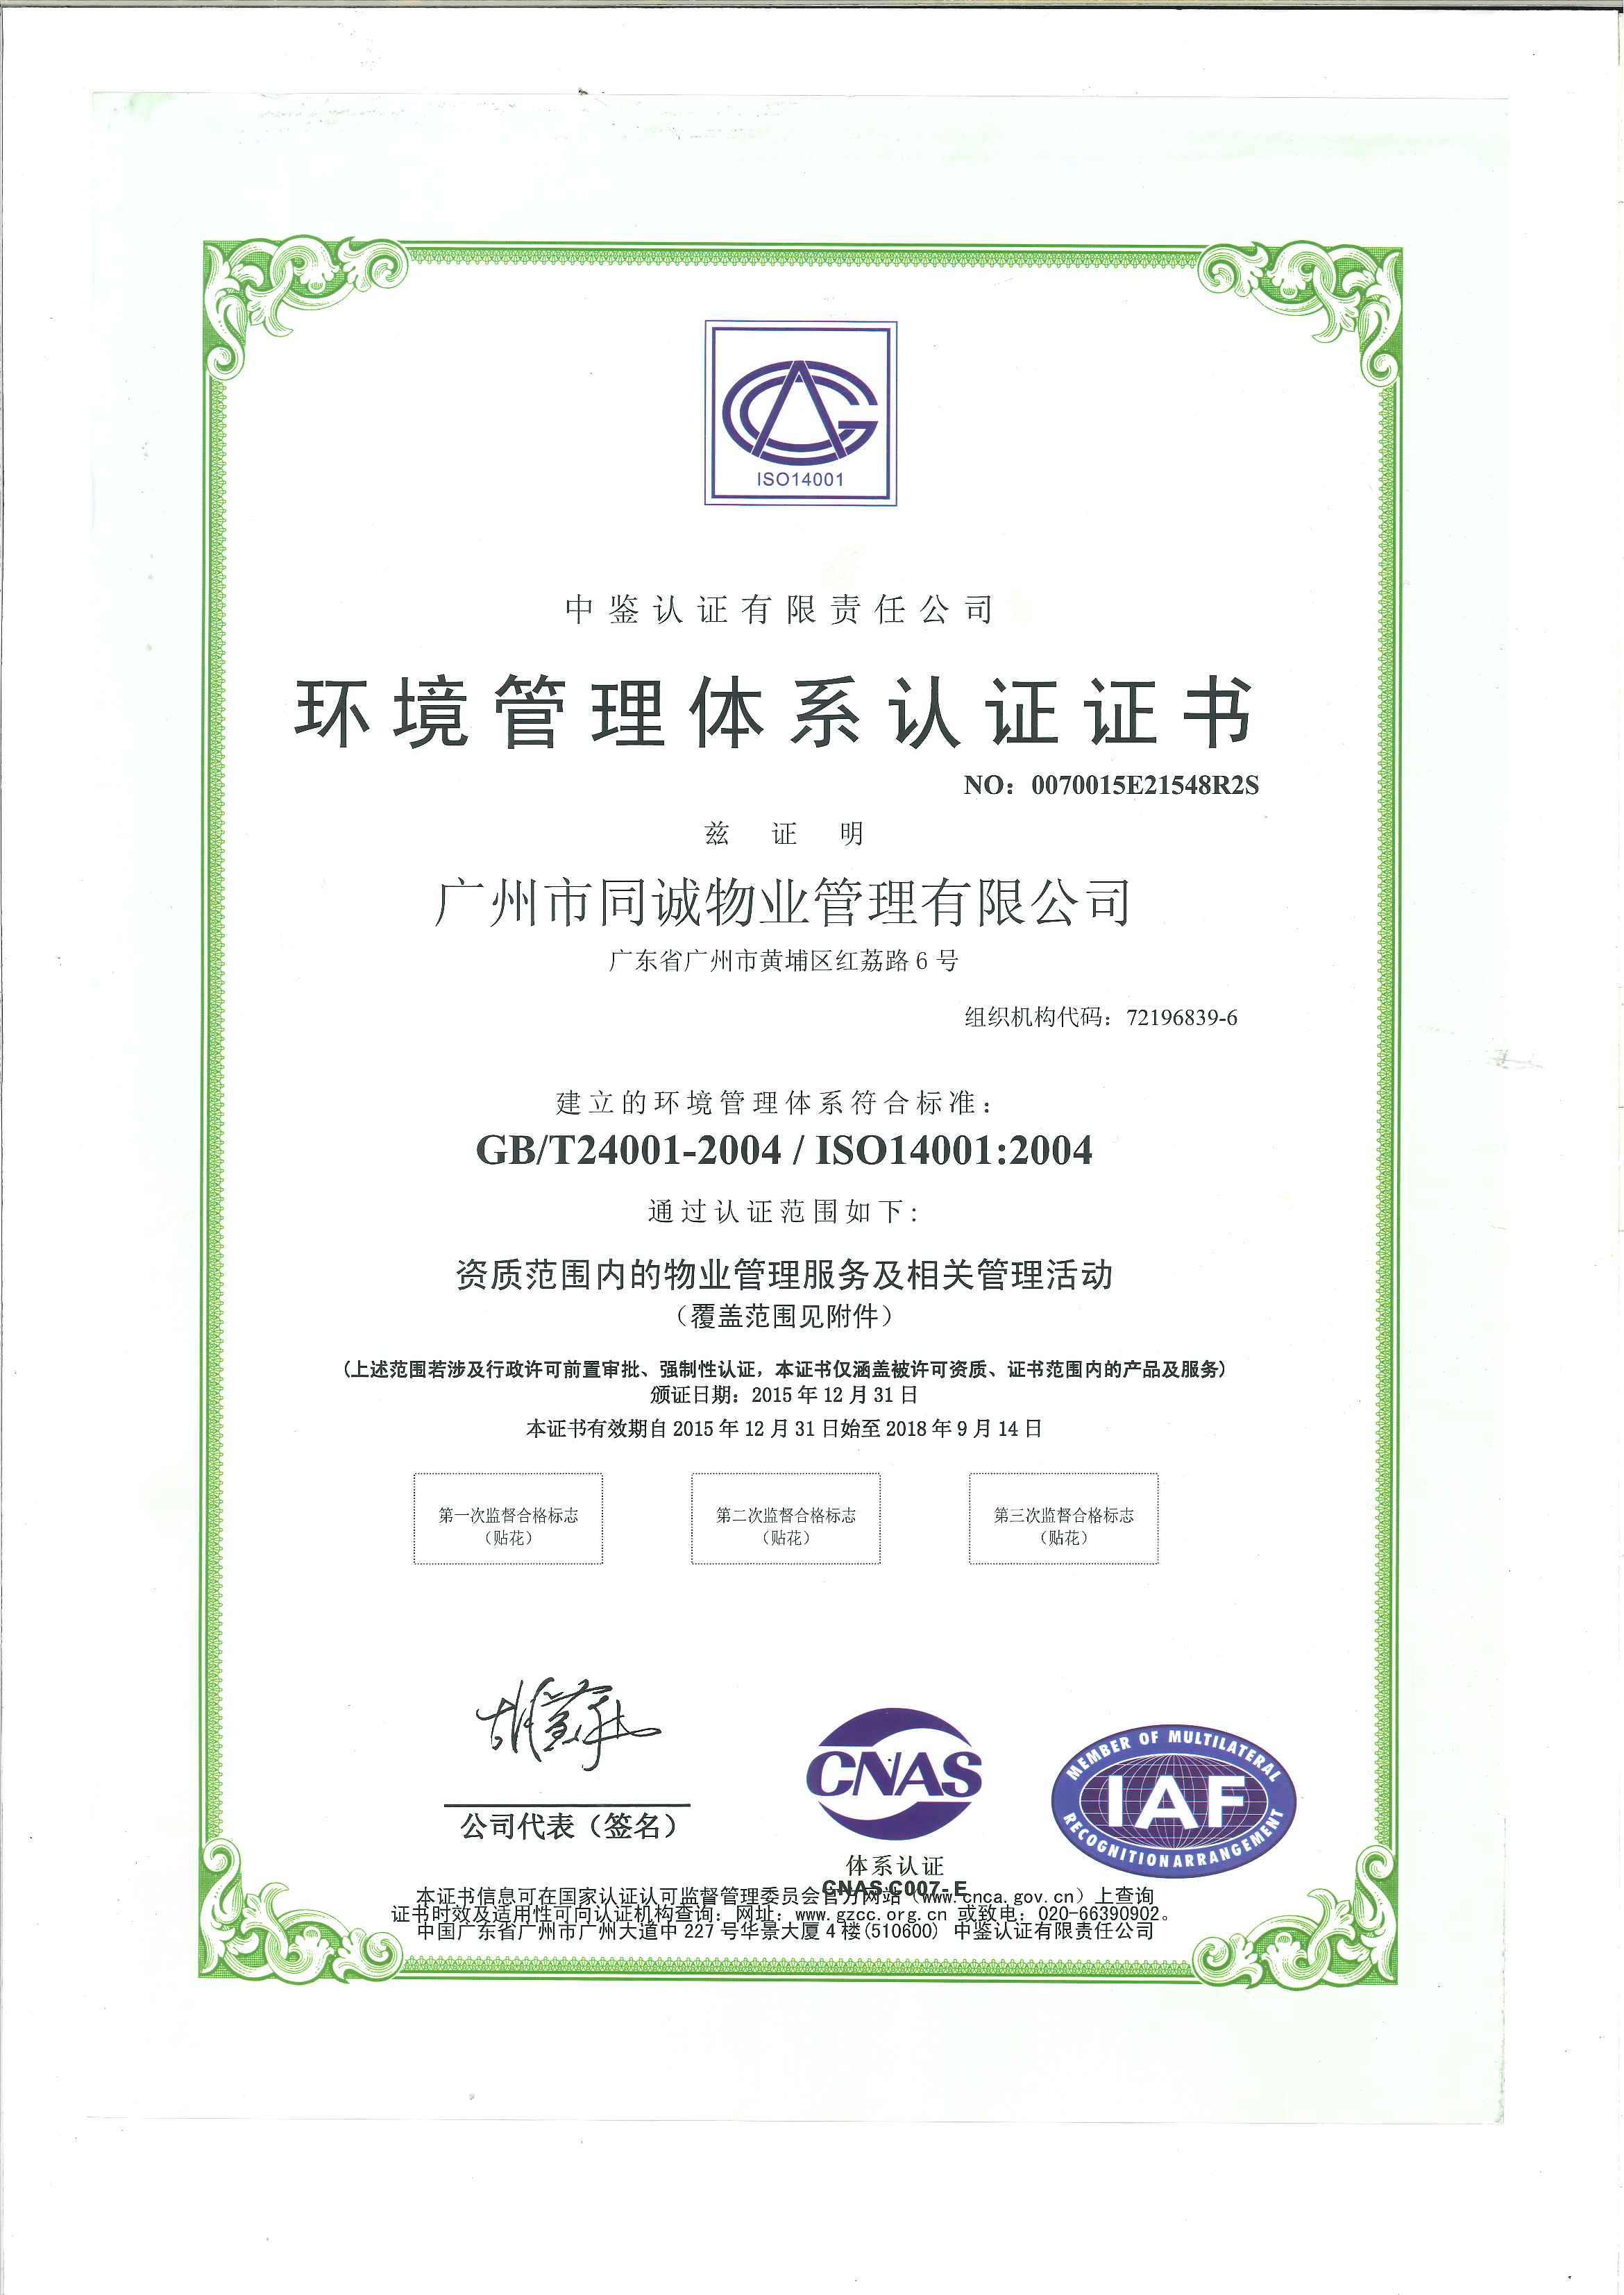 3.环境管理体系认证证书